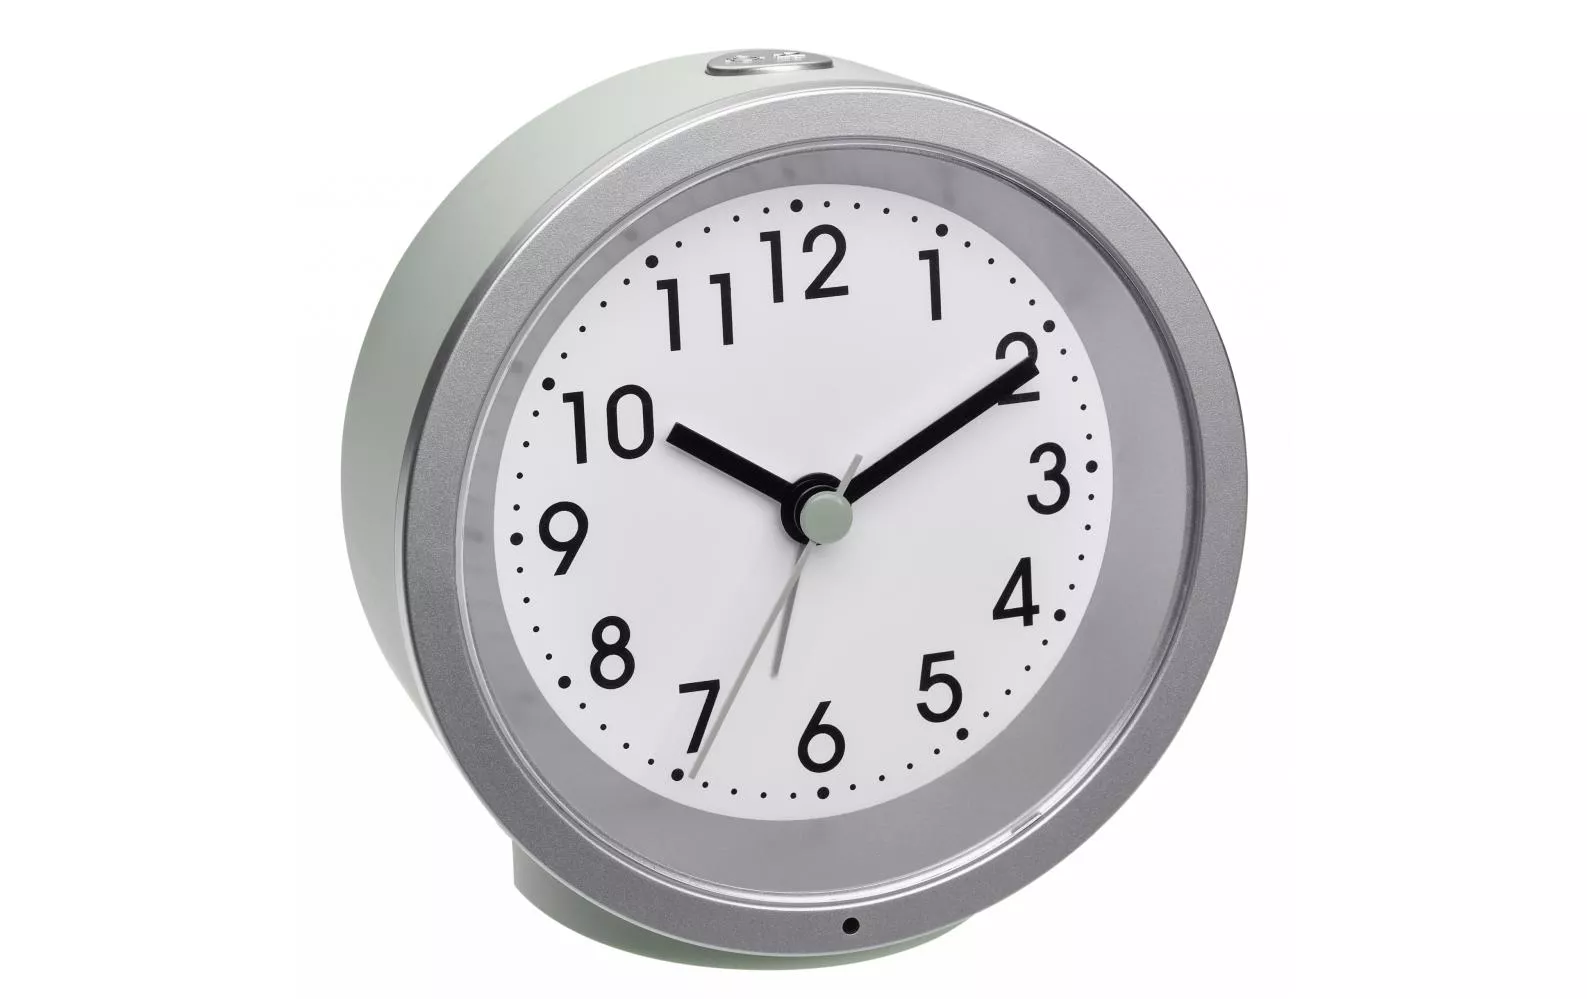 Analogue Alarm Clock Mint